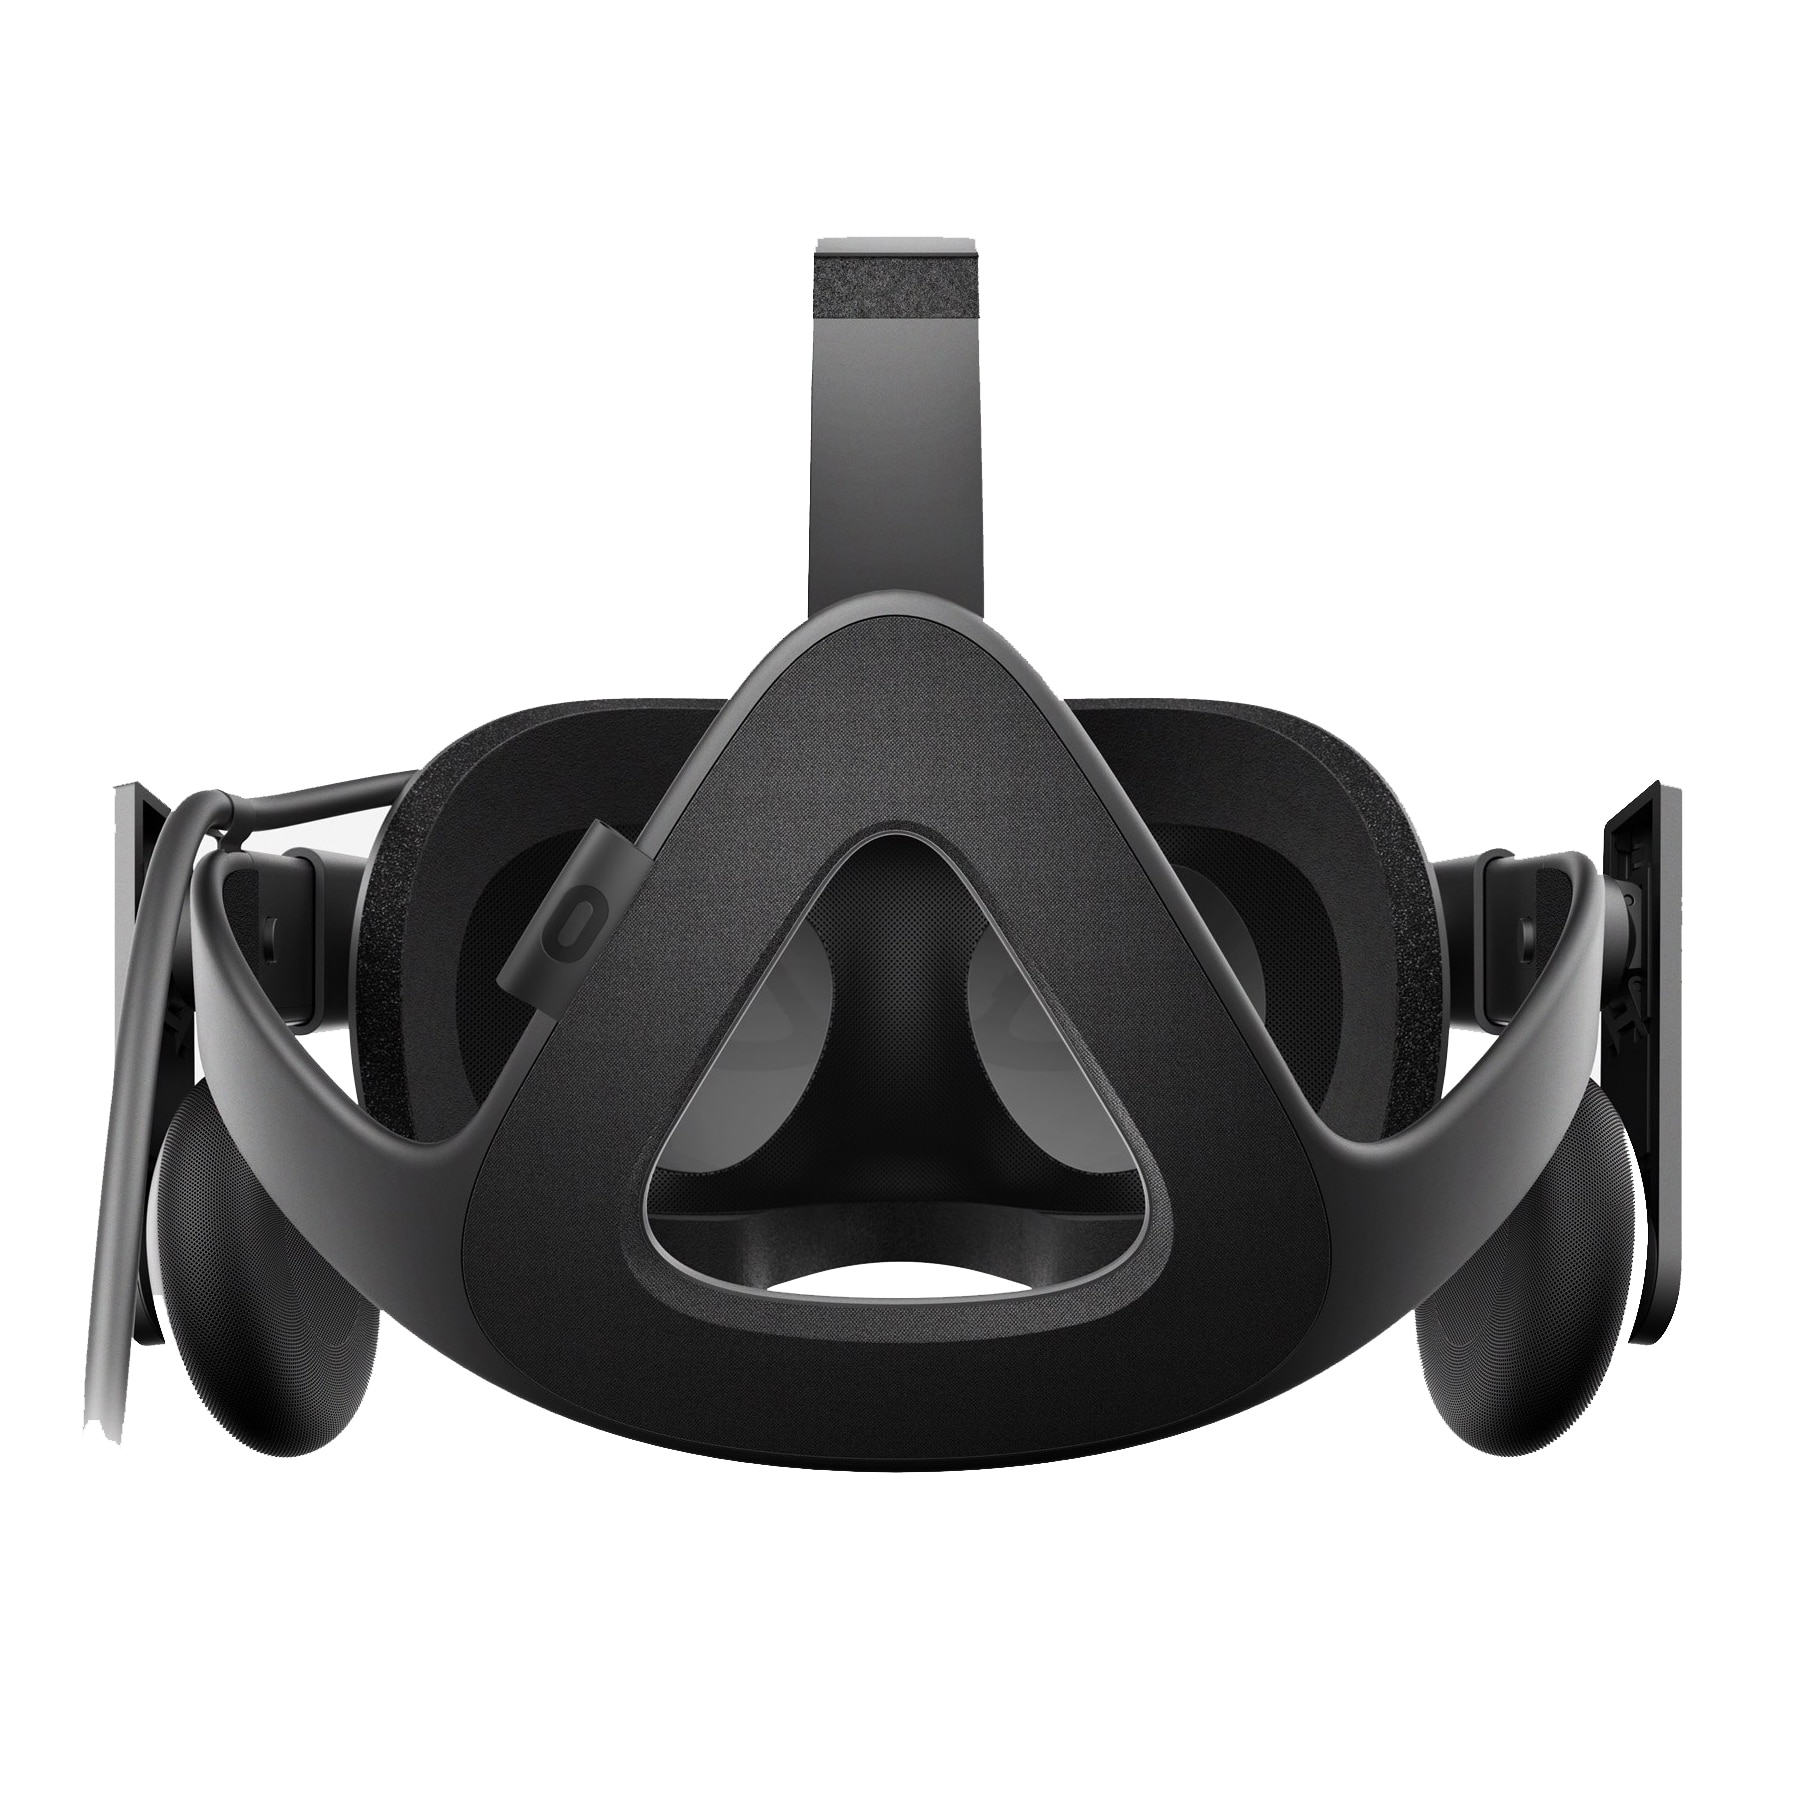 Convention influenza Car Casca cu Ochelari VR Oculus Rift HD pentru PC - eMAG.ro